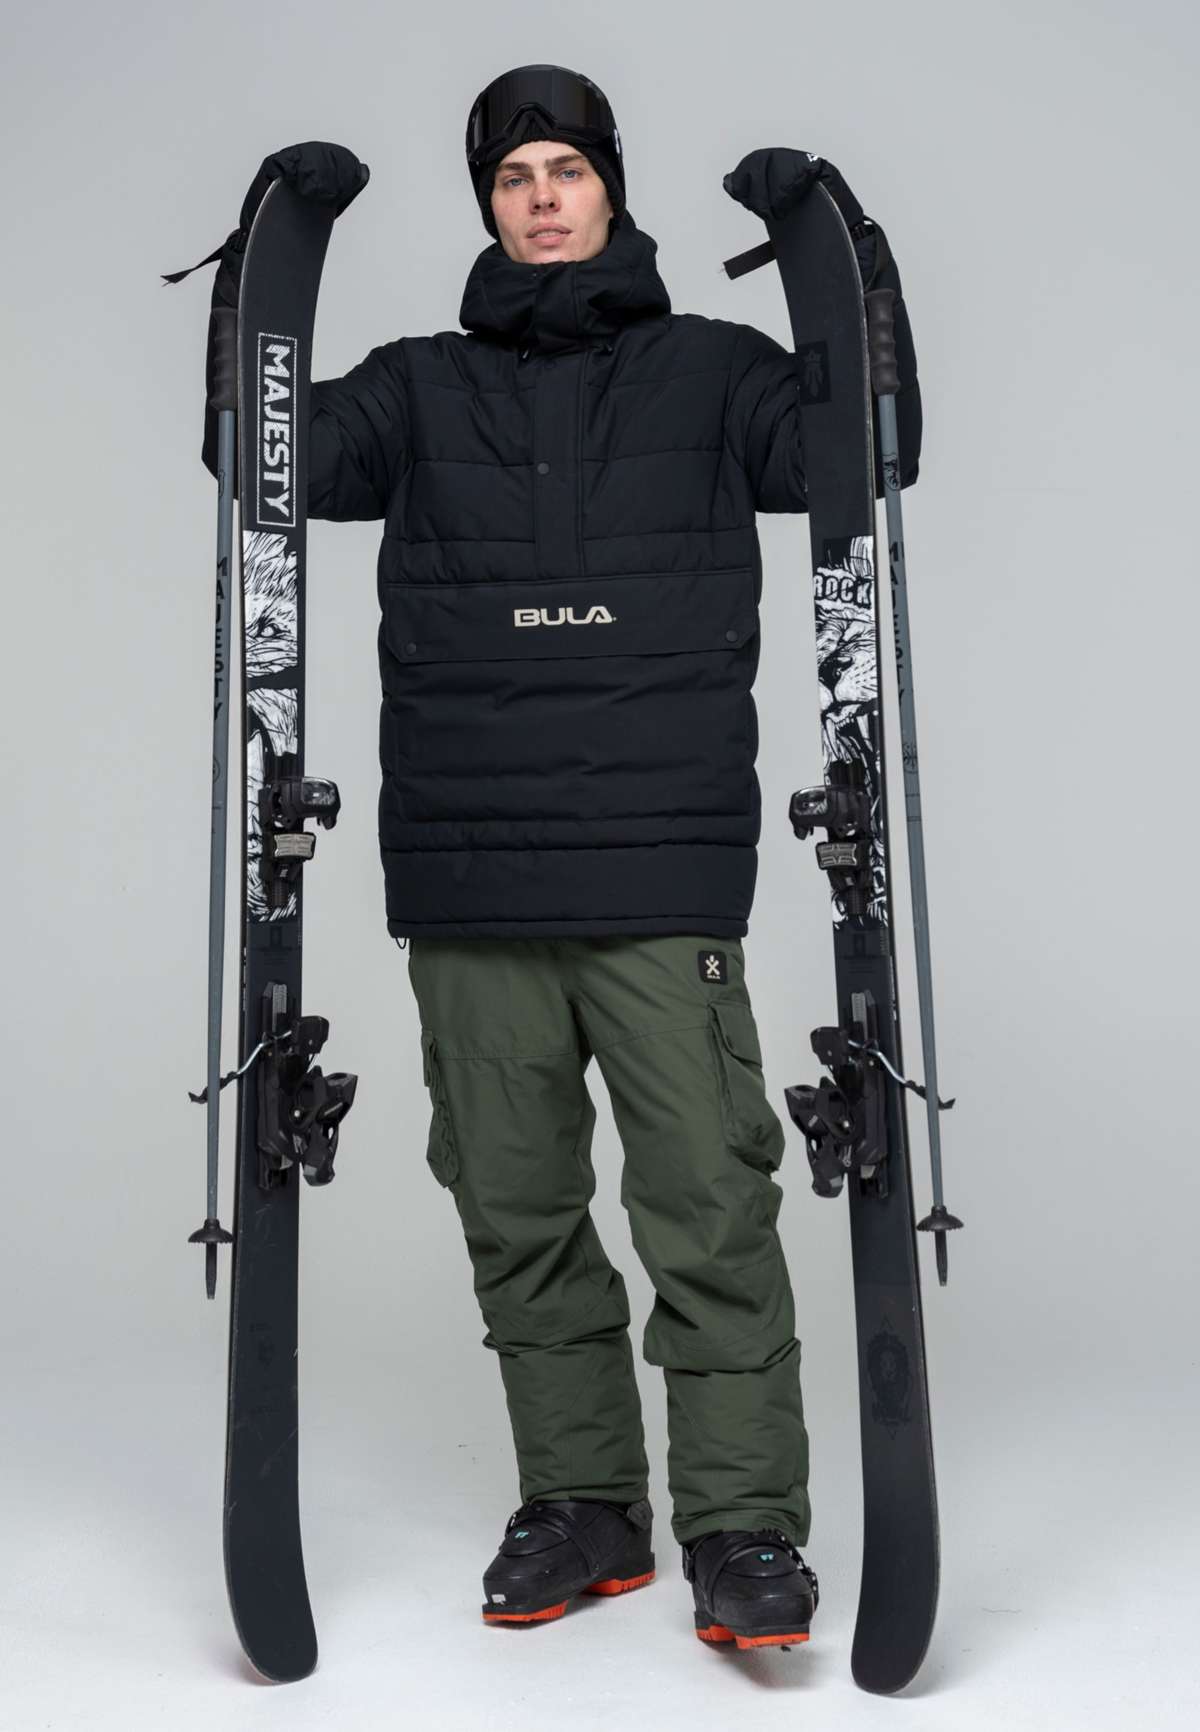 Лыжная куртка с водонепроницаемой функцией.